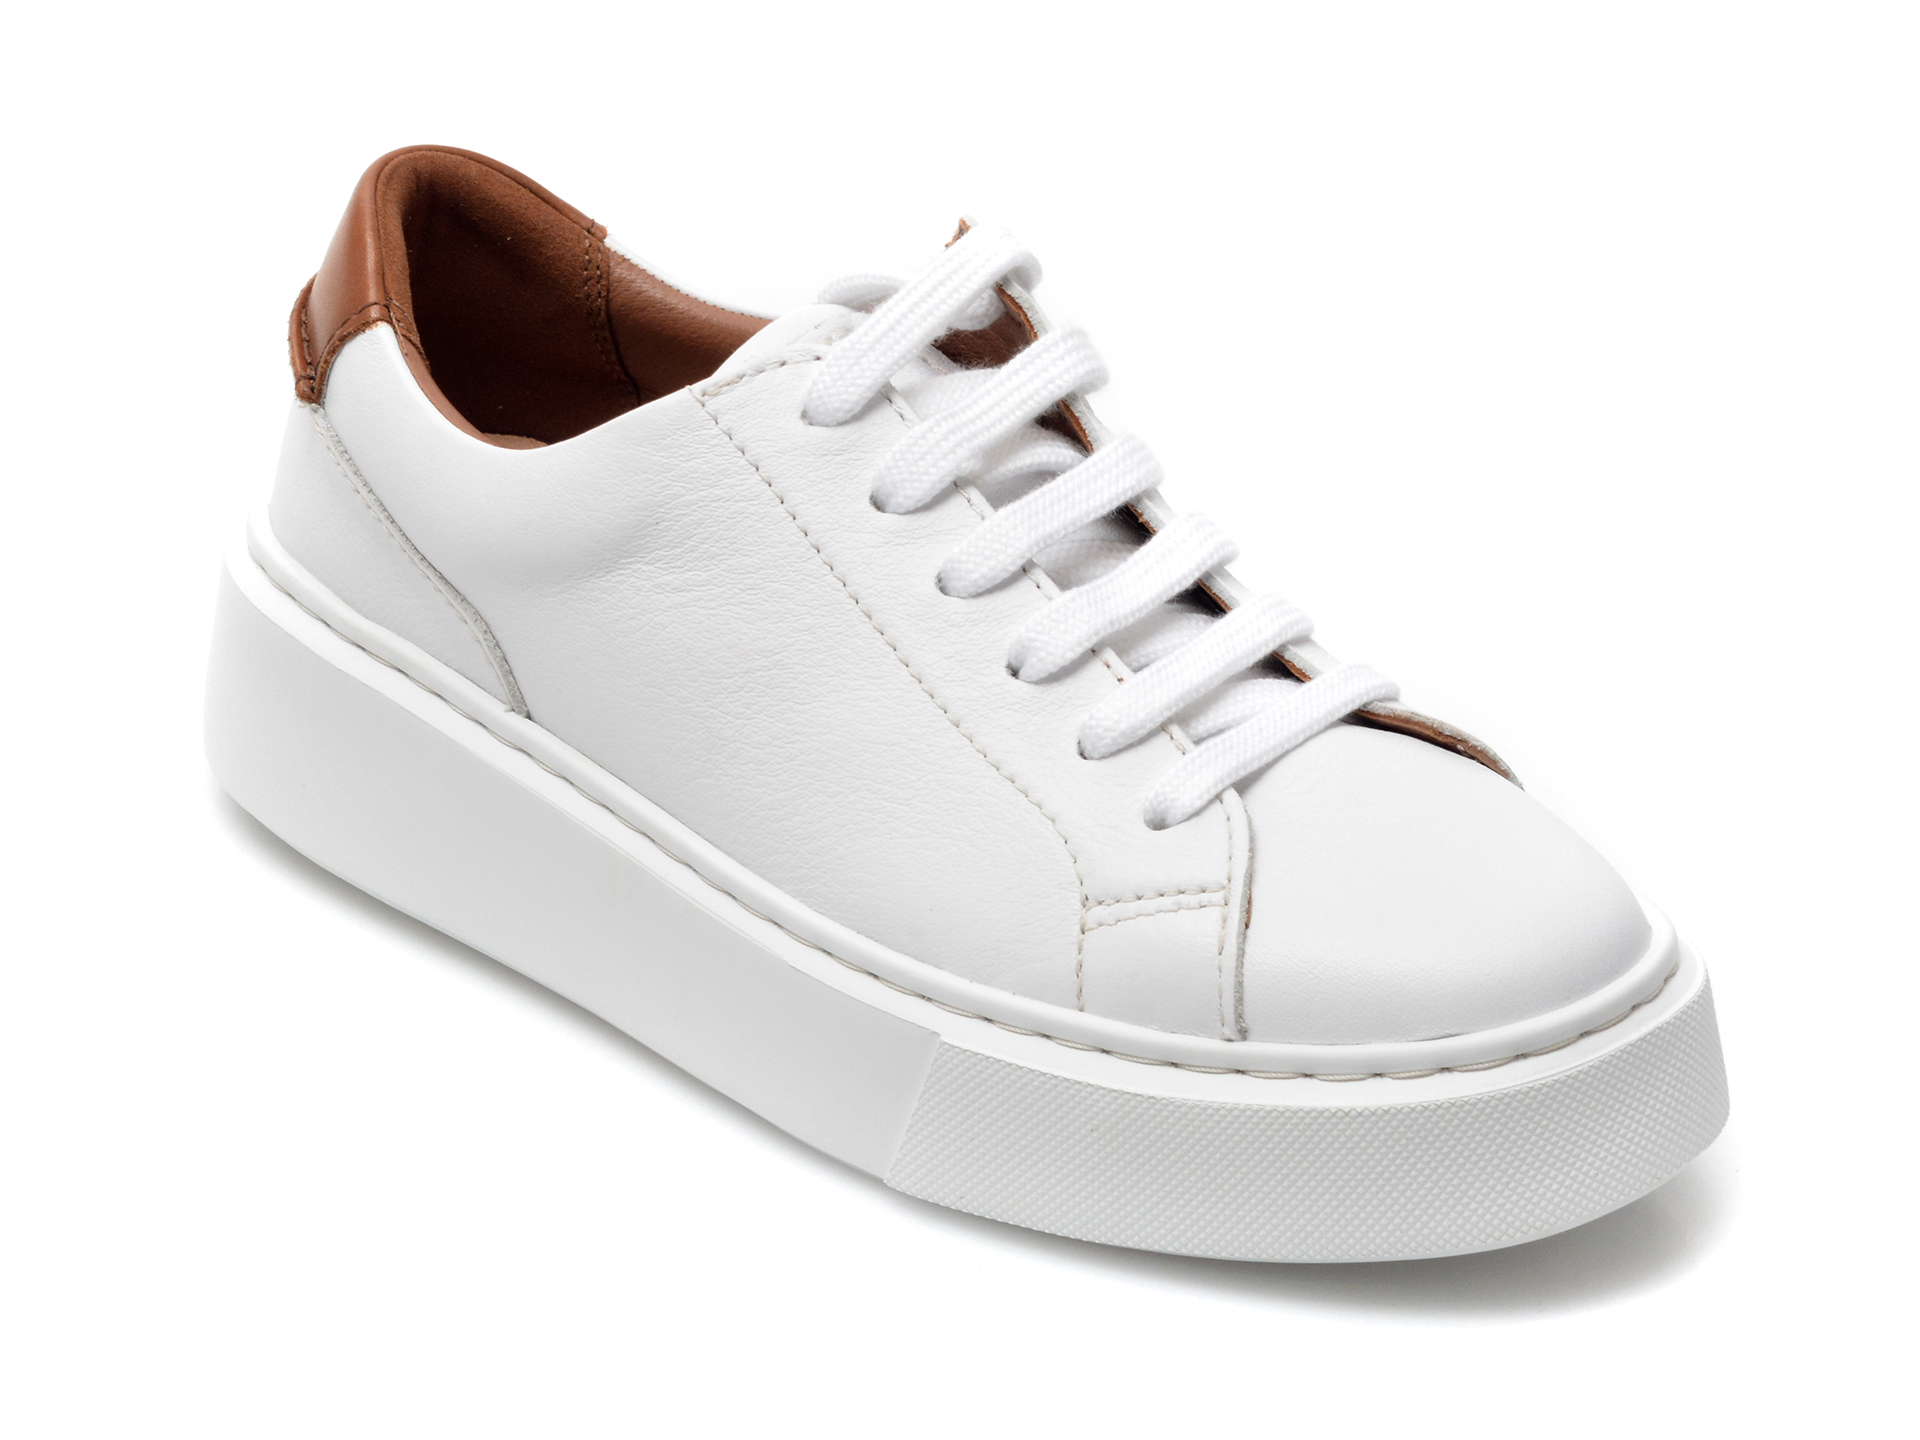 Pantofi CLARKS albi, HERO LITE LACE, din piele naturala Clarks imagine noua